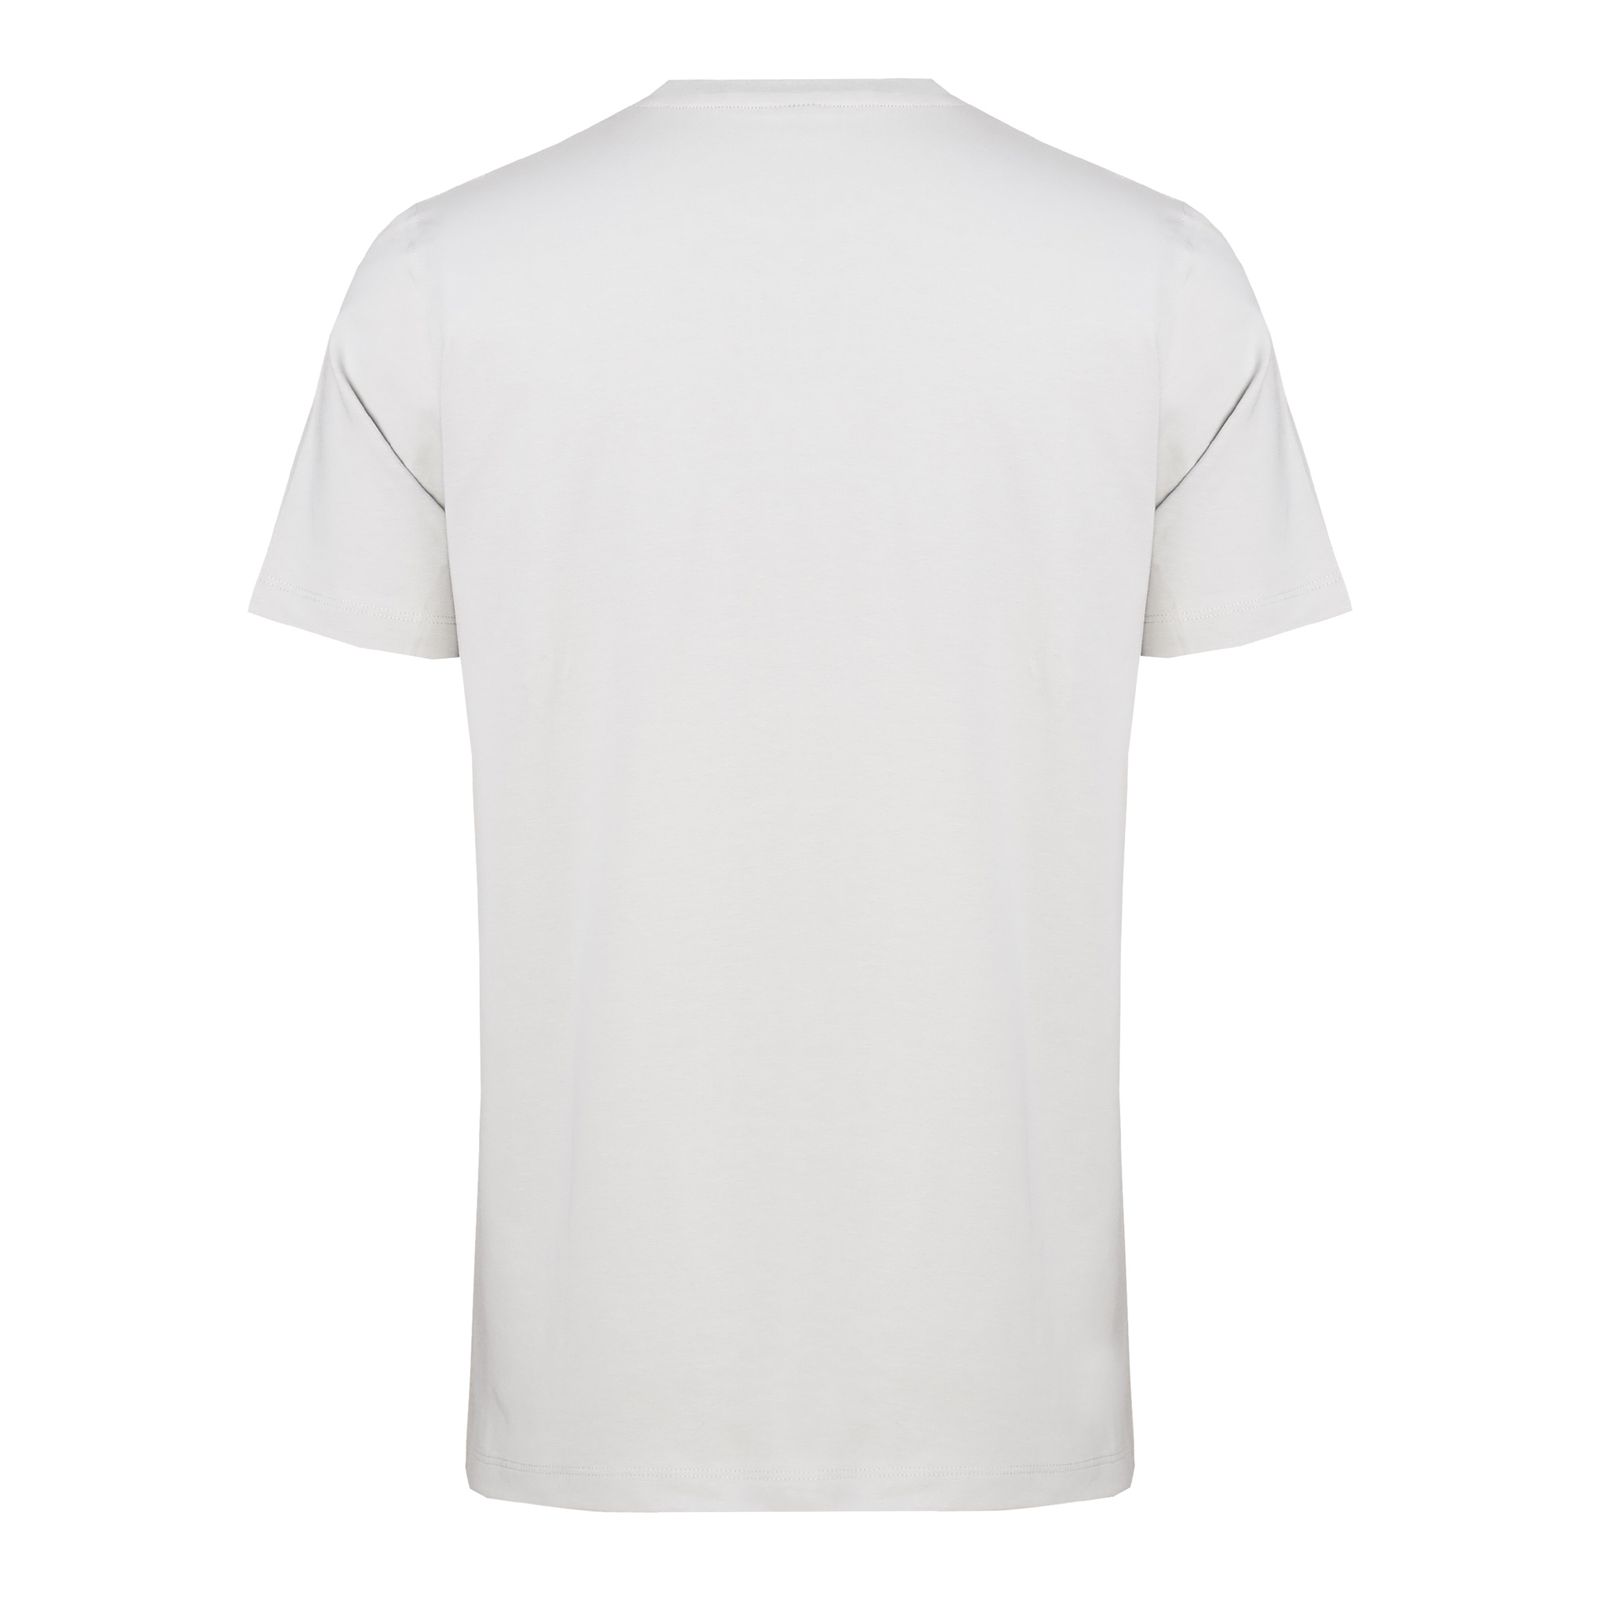 تی شرت آستین کوتاه مردانه جی تی هوگرو مدل 1036030 -  - 2